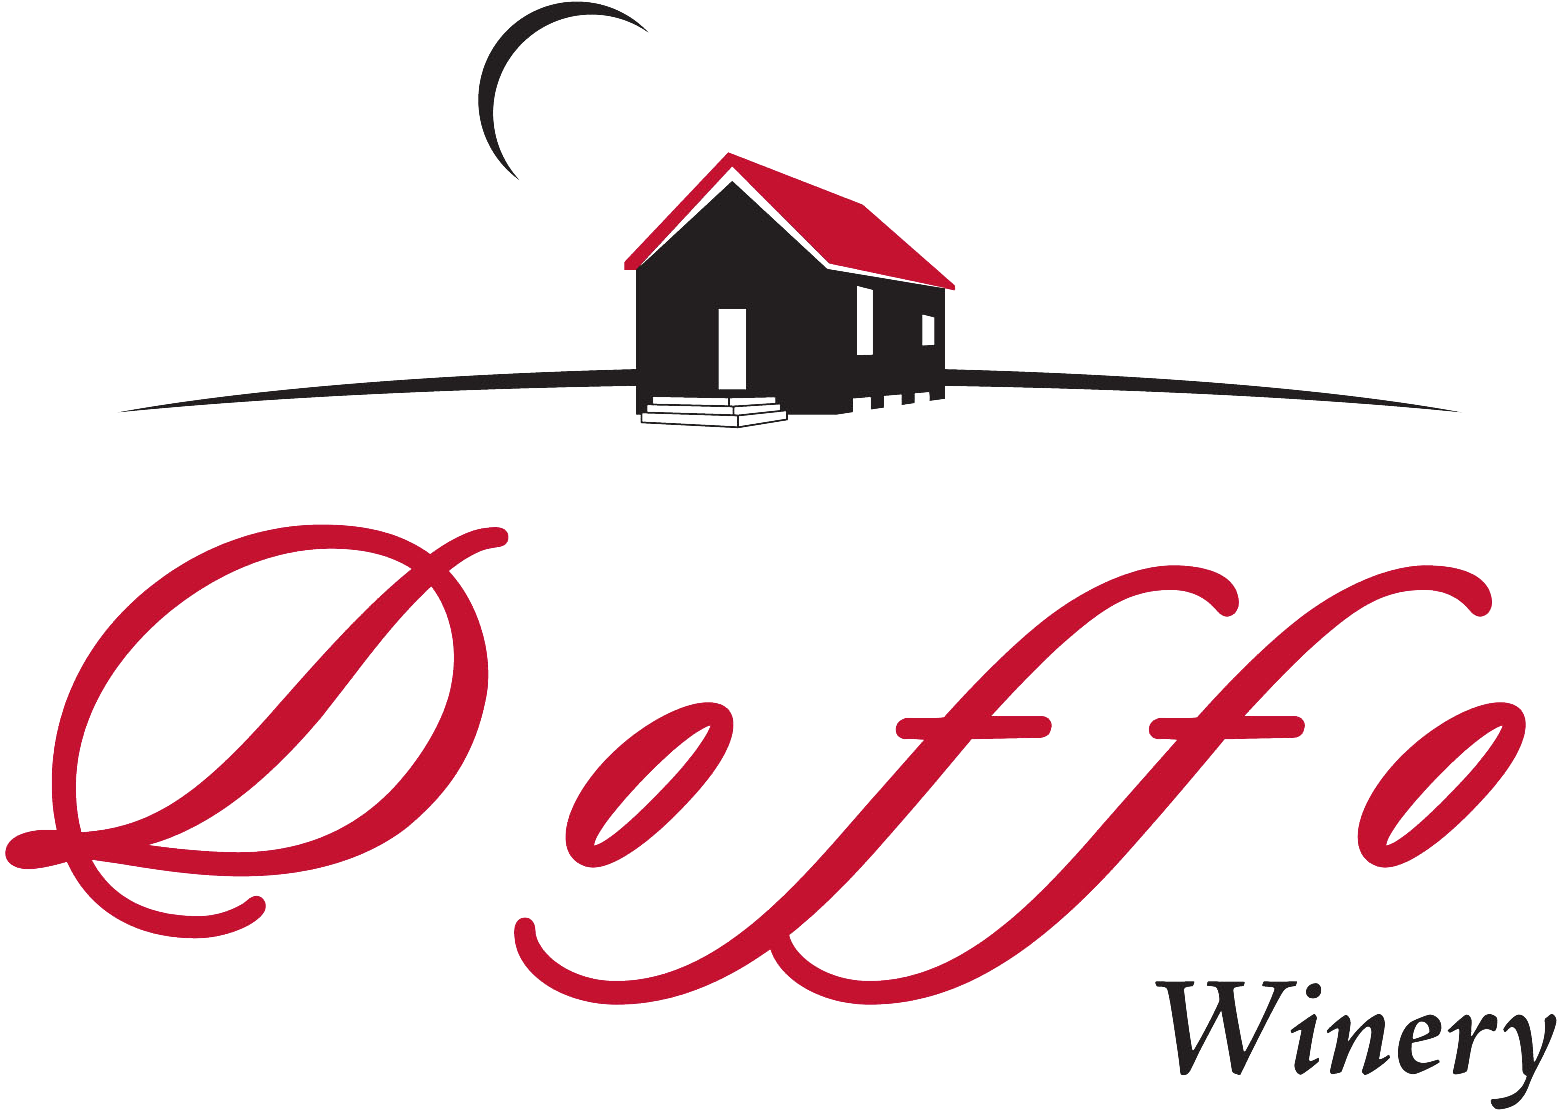 Doffo Wines - Doffo Winery (1629x1155)